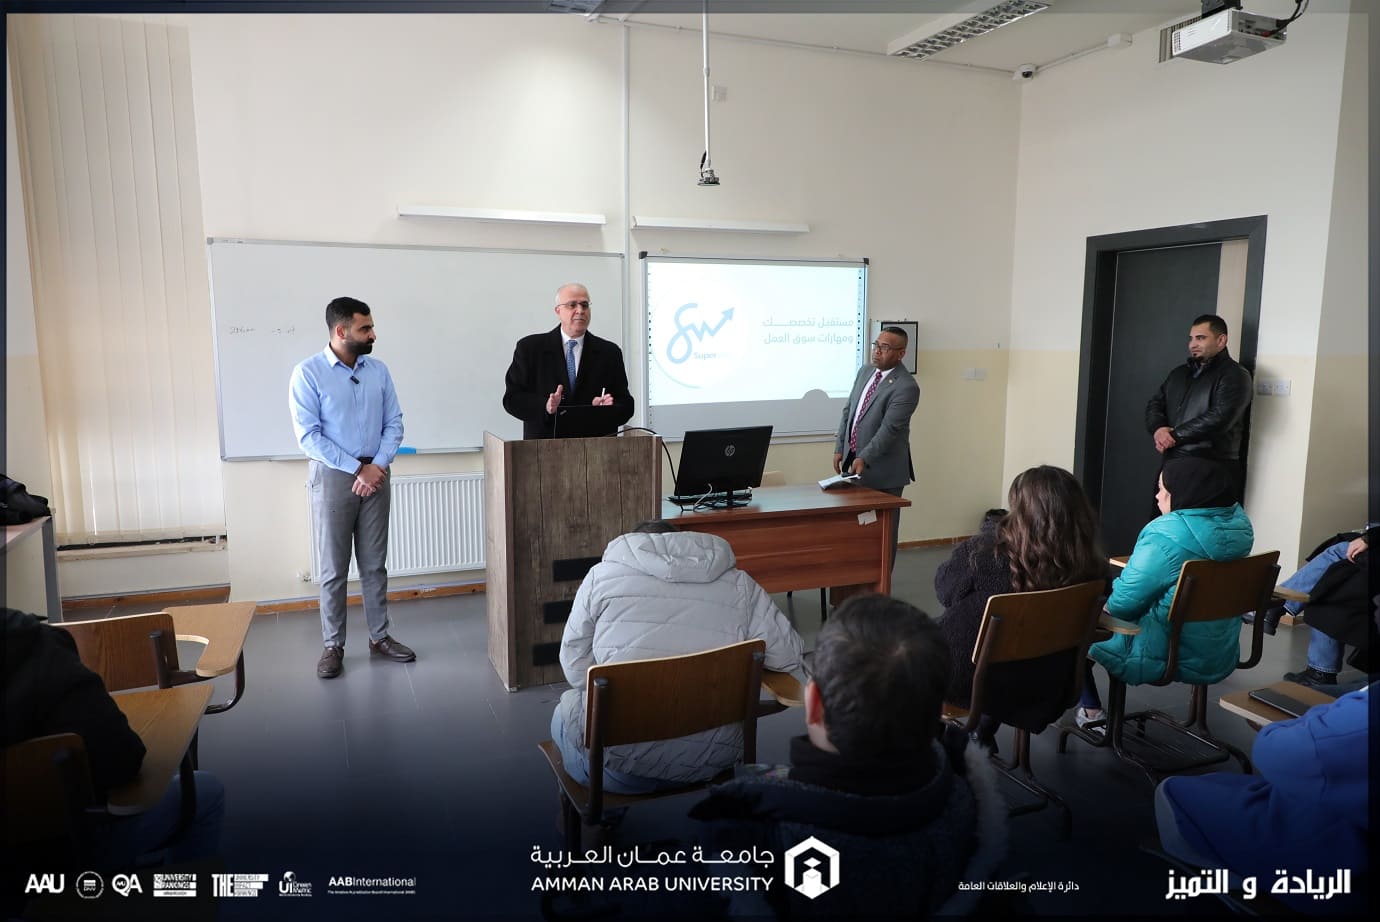 ورشة توعوية بعنوان "احتياجات سوق العمل وكيفية الاستعداد لحياة ما بعد التخرج" "في جامعة عمان العربية